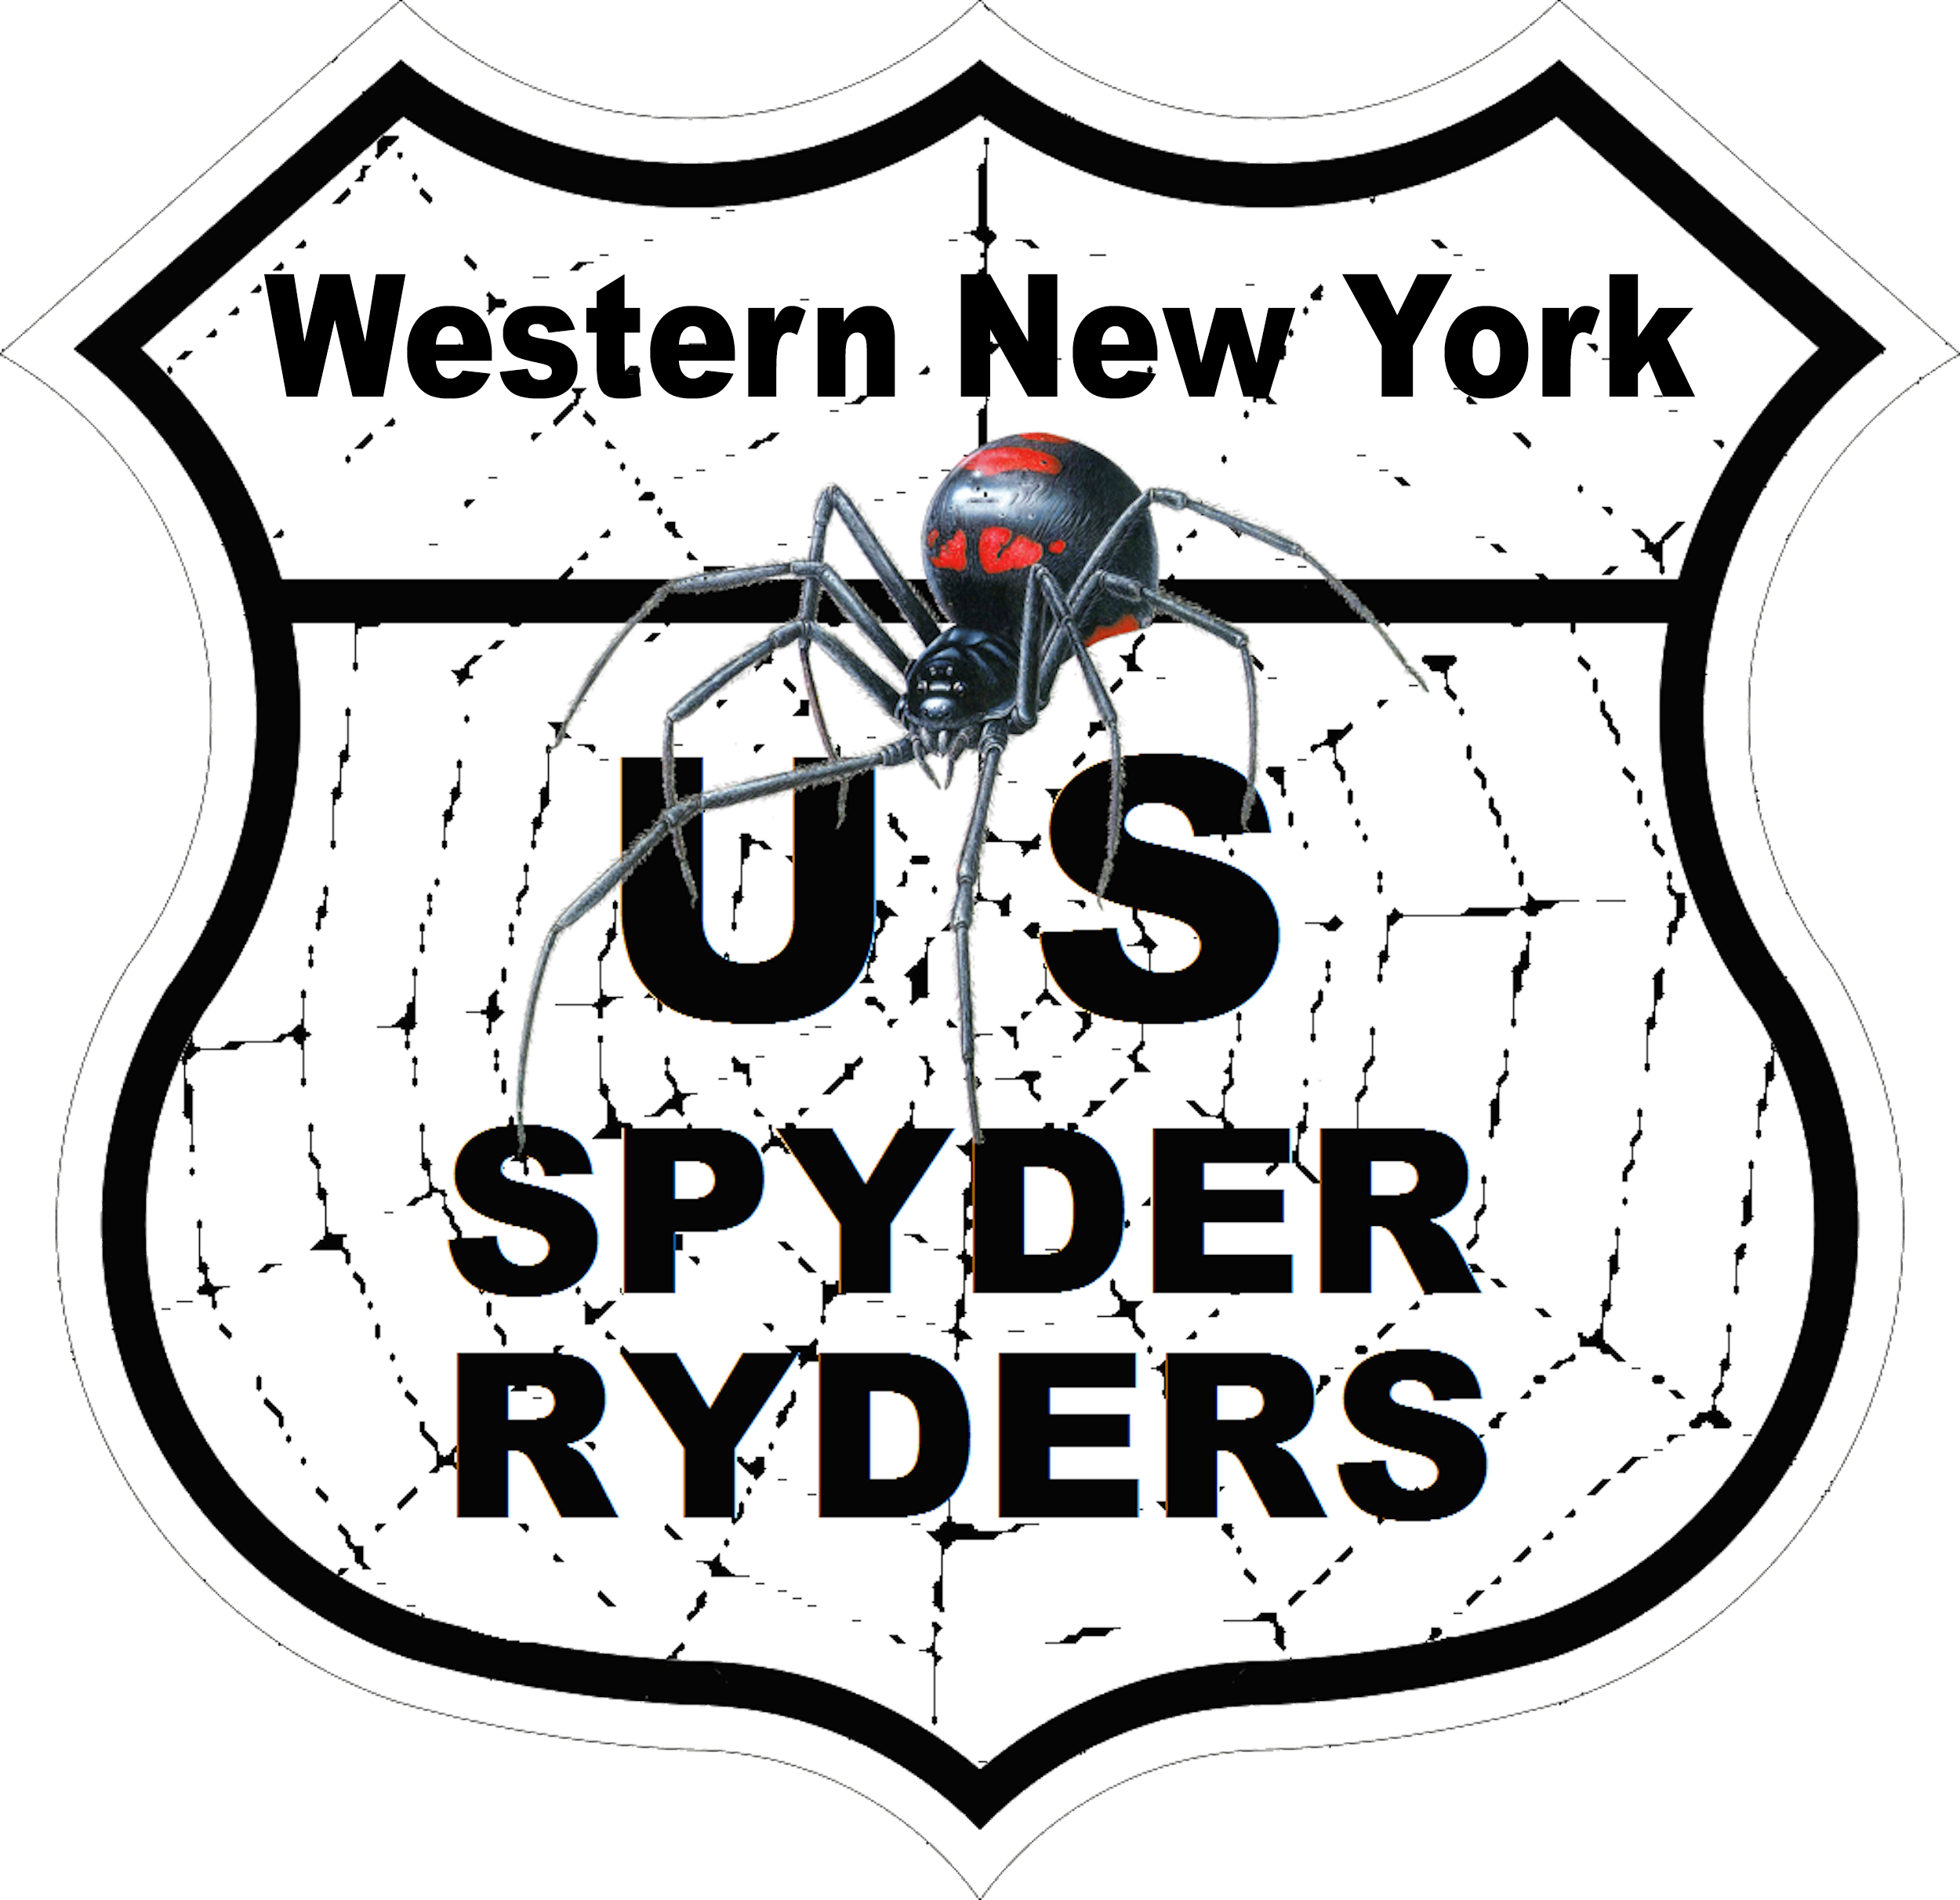 US_Spyder_Ryder_NY Western NY.png